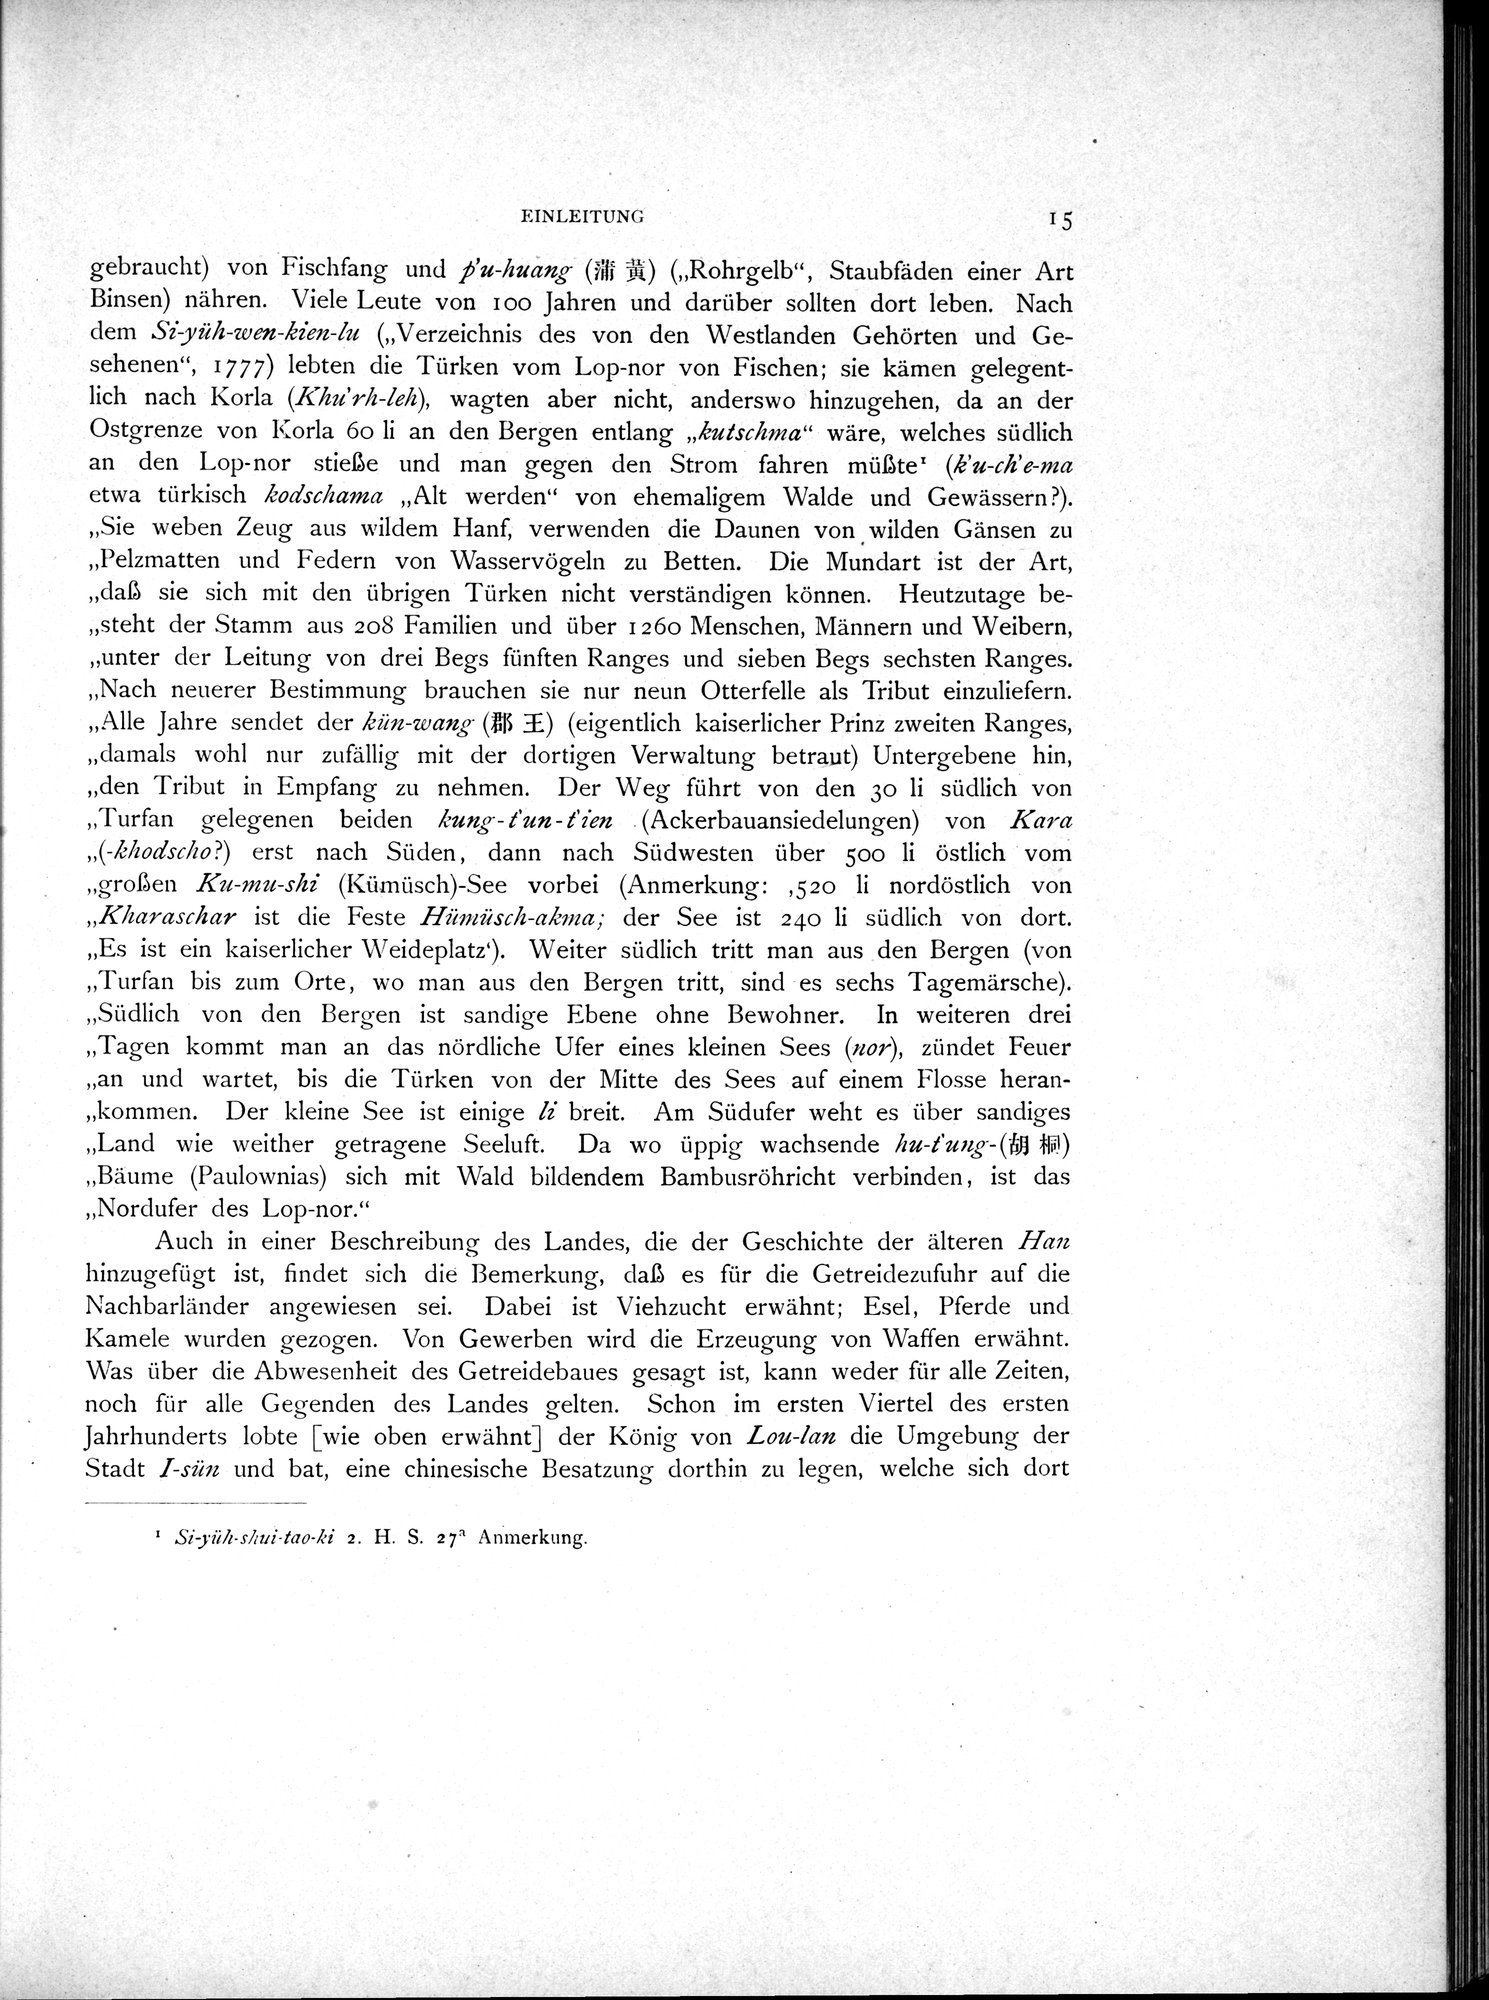 Die Chinesischen Handschriften- und sonstigen Kleinfunde Sven Hedins in Lou-lan : vol.1 / Page 39 (Grayscale High Resolution Image)